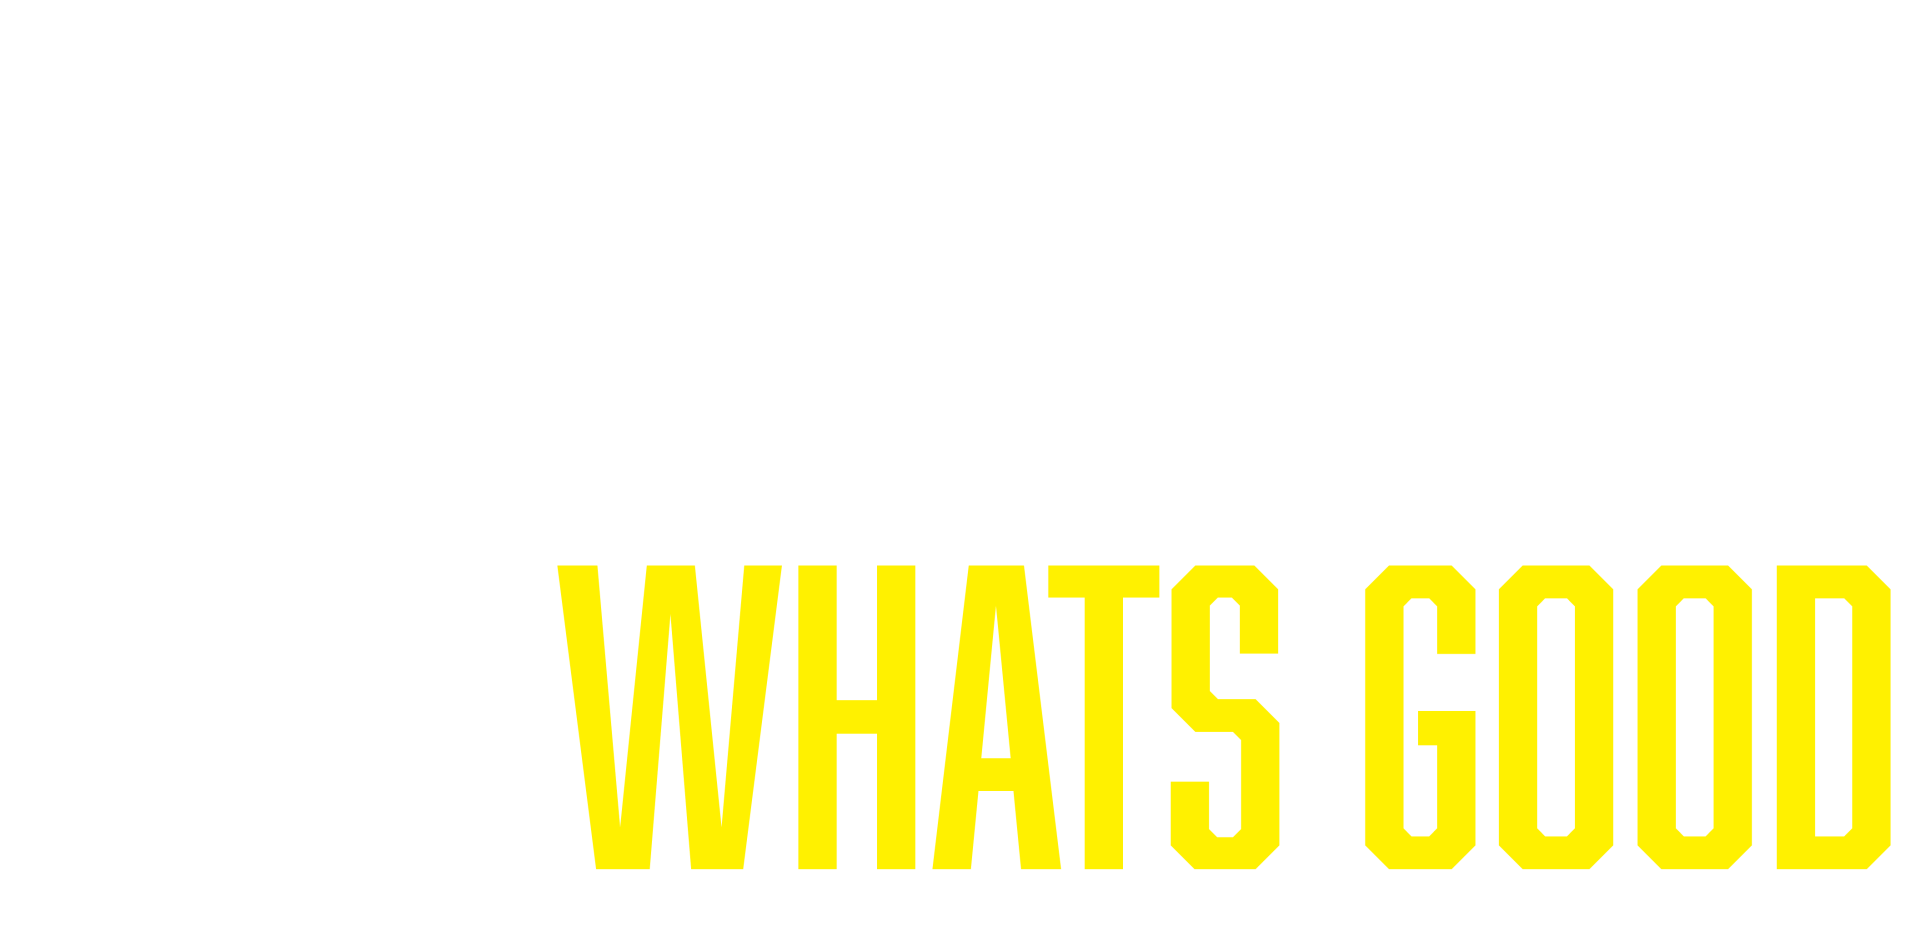 Bad Mobile Whats Good